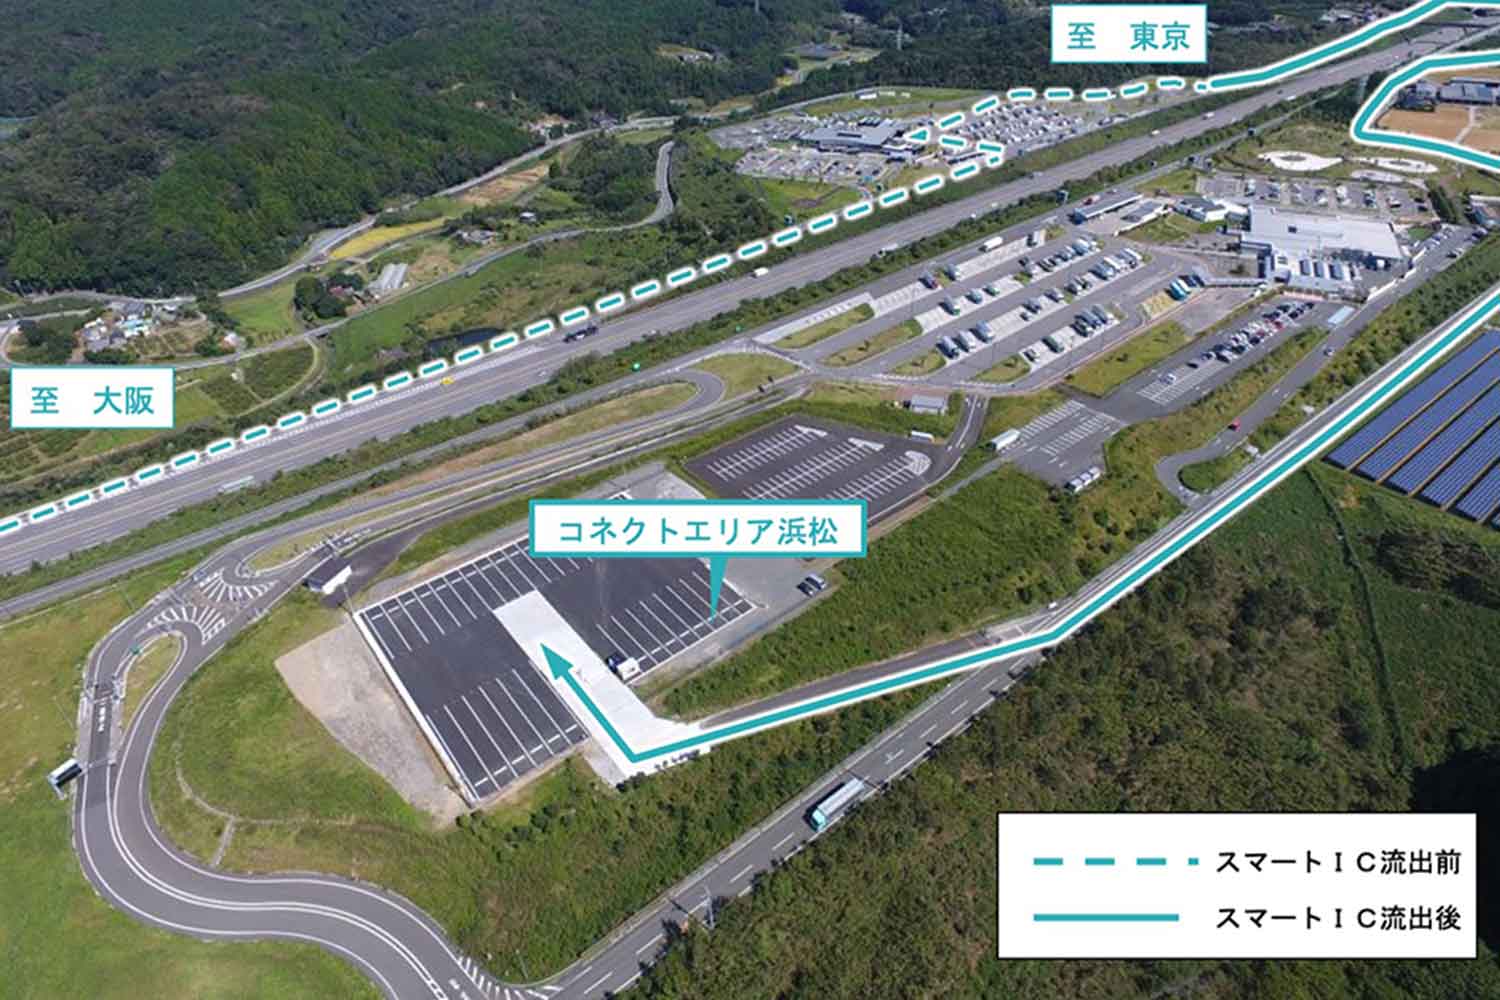 新東名高速道路の浜松SAの中継物流拠点である「コネクトエリア浜松」 〜 画像7